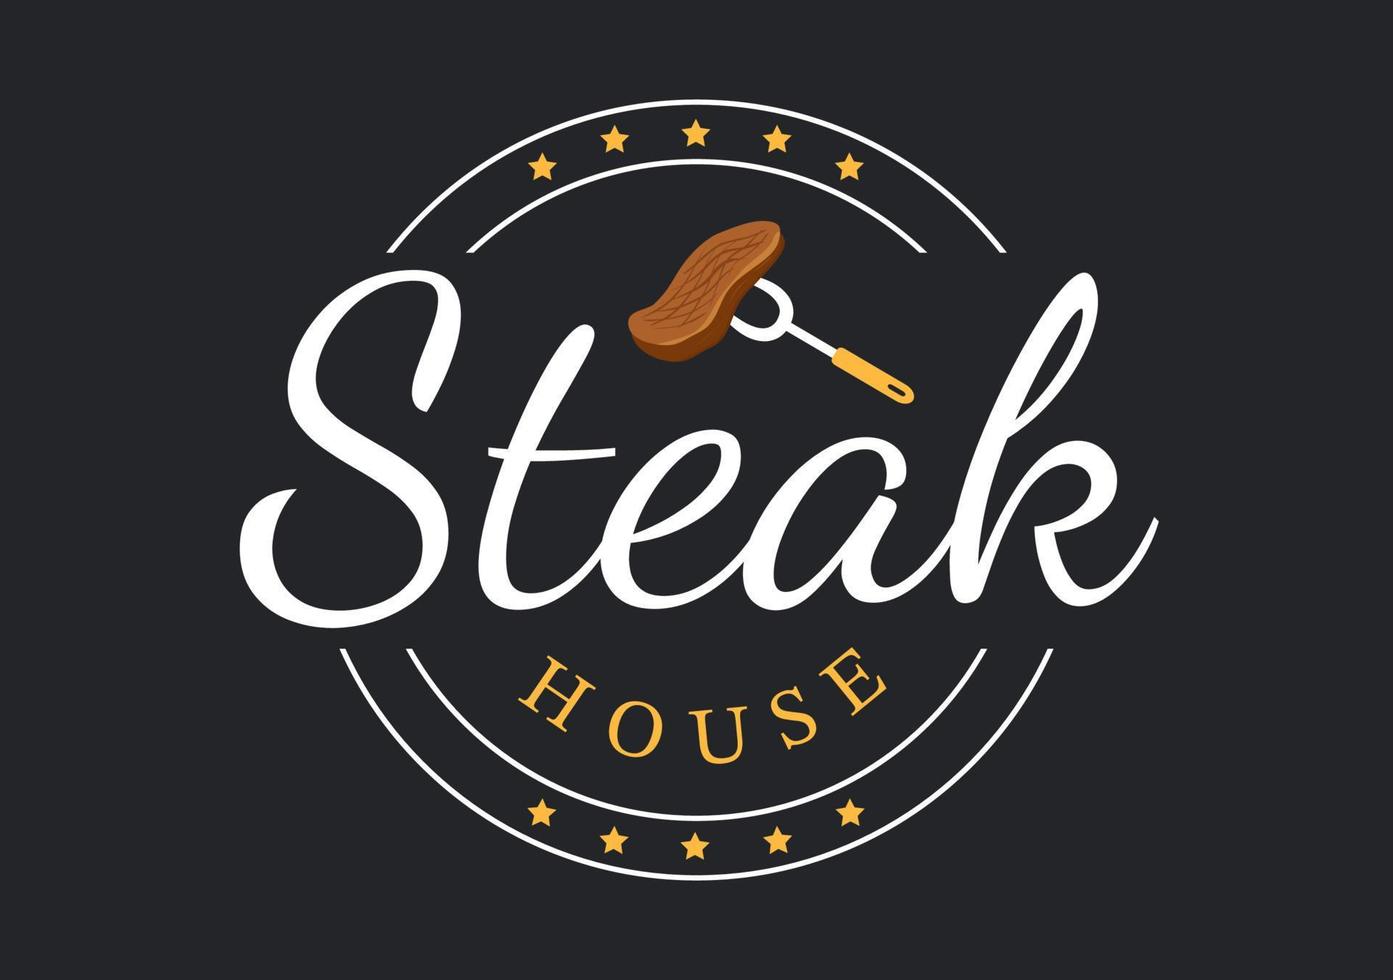 Steakhouse aus gegrilltem Fleisch mit saftigem, köstlichem Steak, Salat und Tomaten zum Grillen in flacher, handgezeichneter Cartoon-Vorlagenillustration vektor